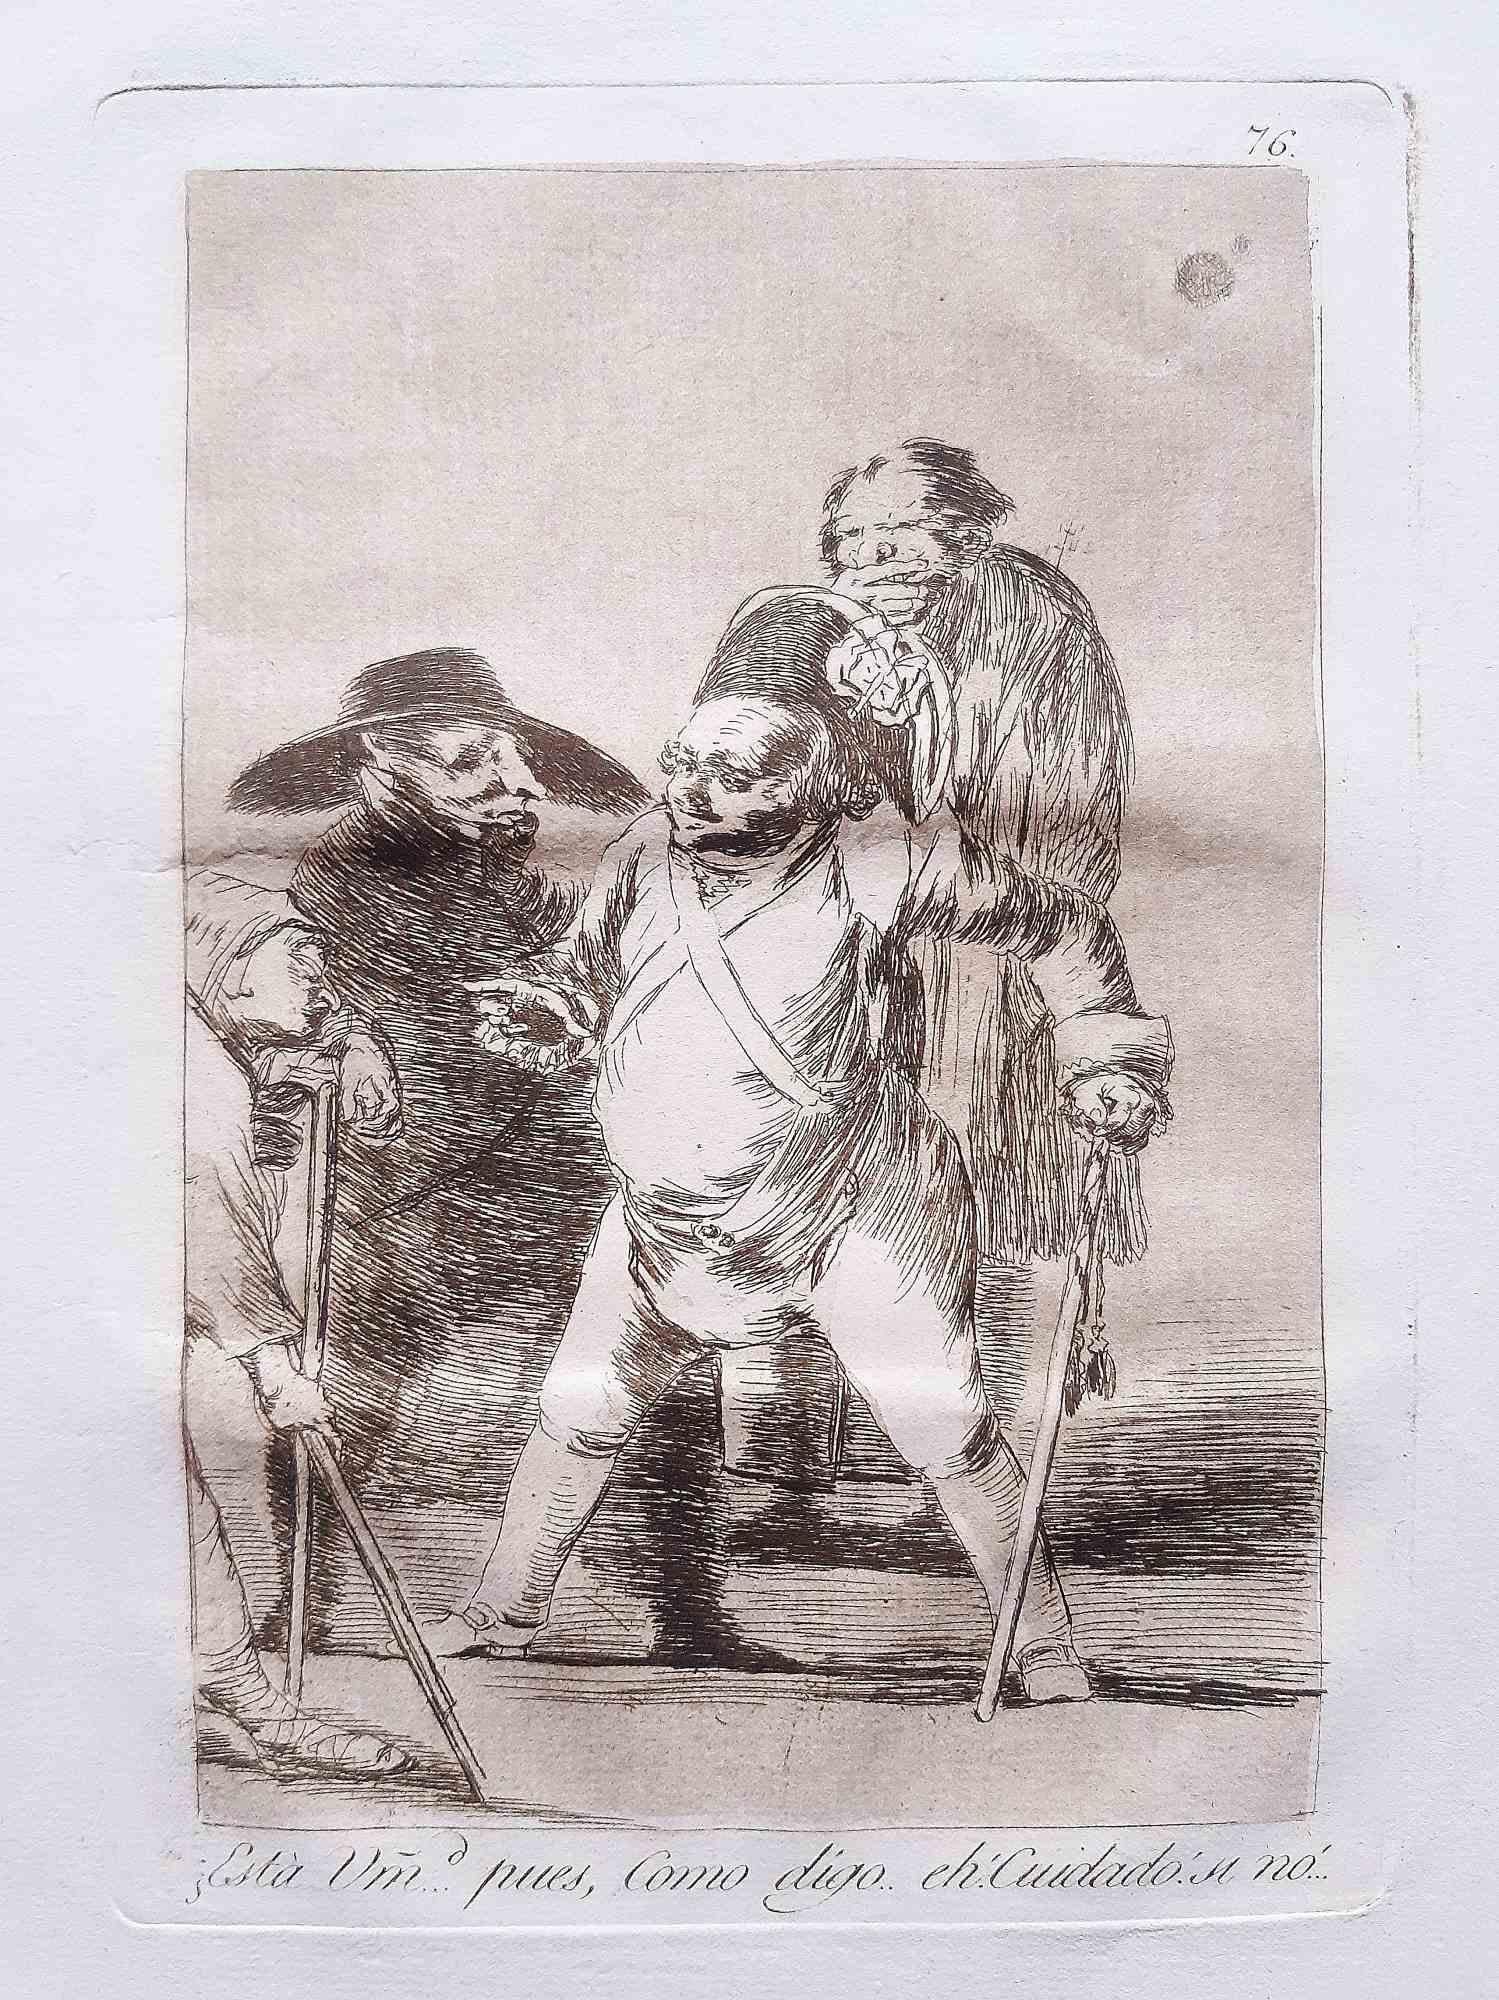 Esta usted... pues... eh!como digo... cuidado de Los Caprichos est une œuvre originale réalisée par l'artiste Francisco Goya et publiée pour la première fois en 1799.

Eau-forte et aquatinte sur papier.

Cette gravure fait partie de la première